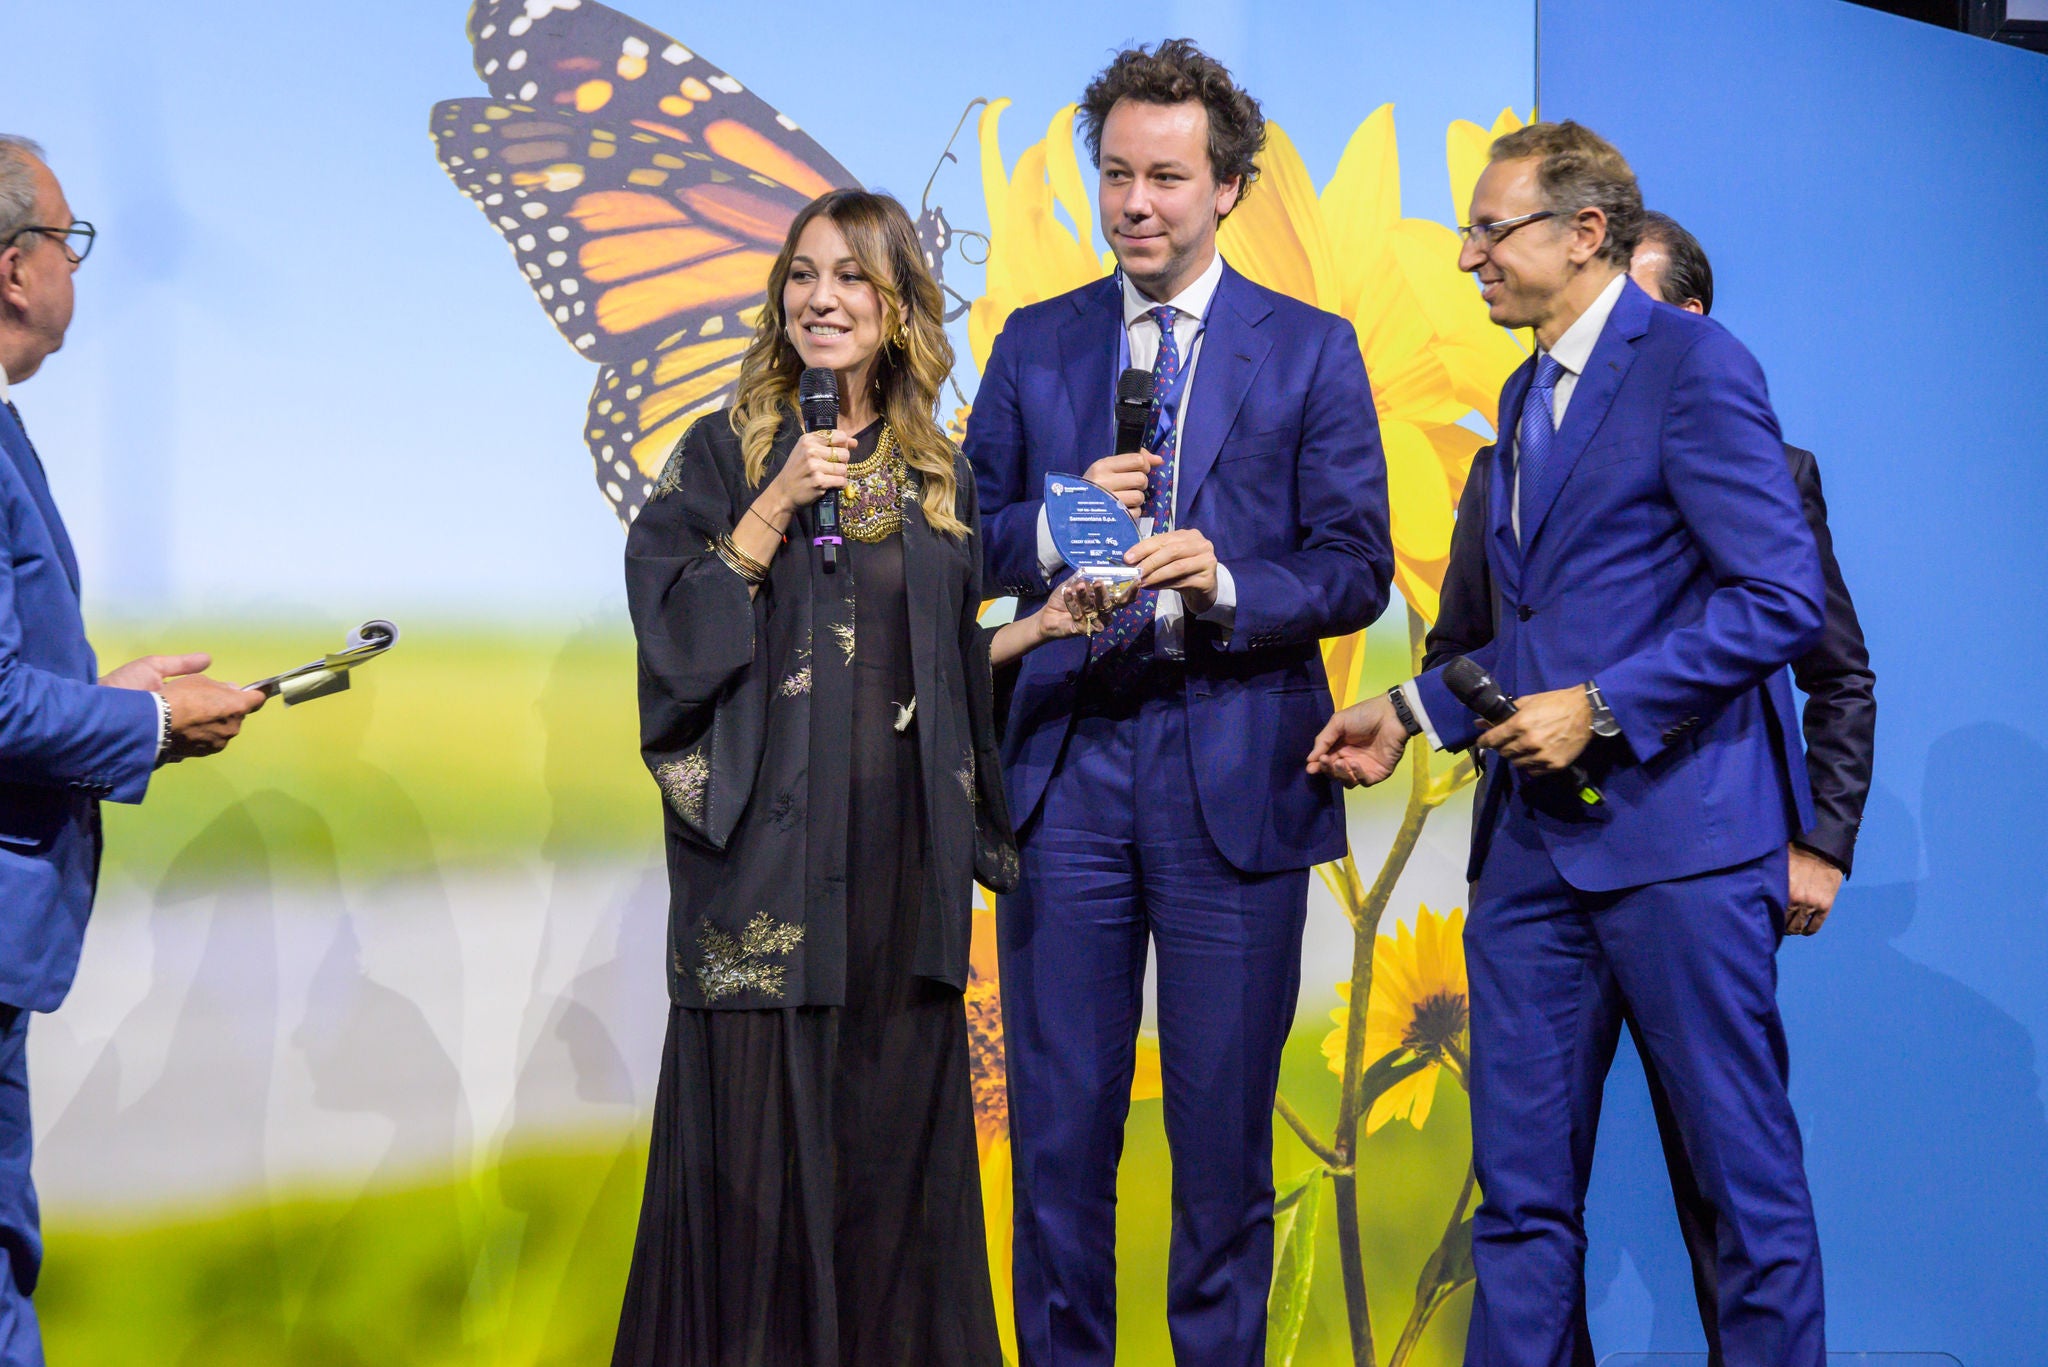 sammontana italia sustainability award 2022